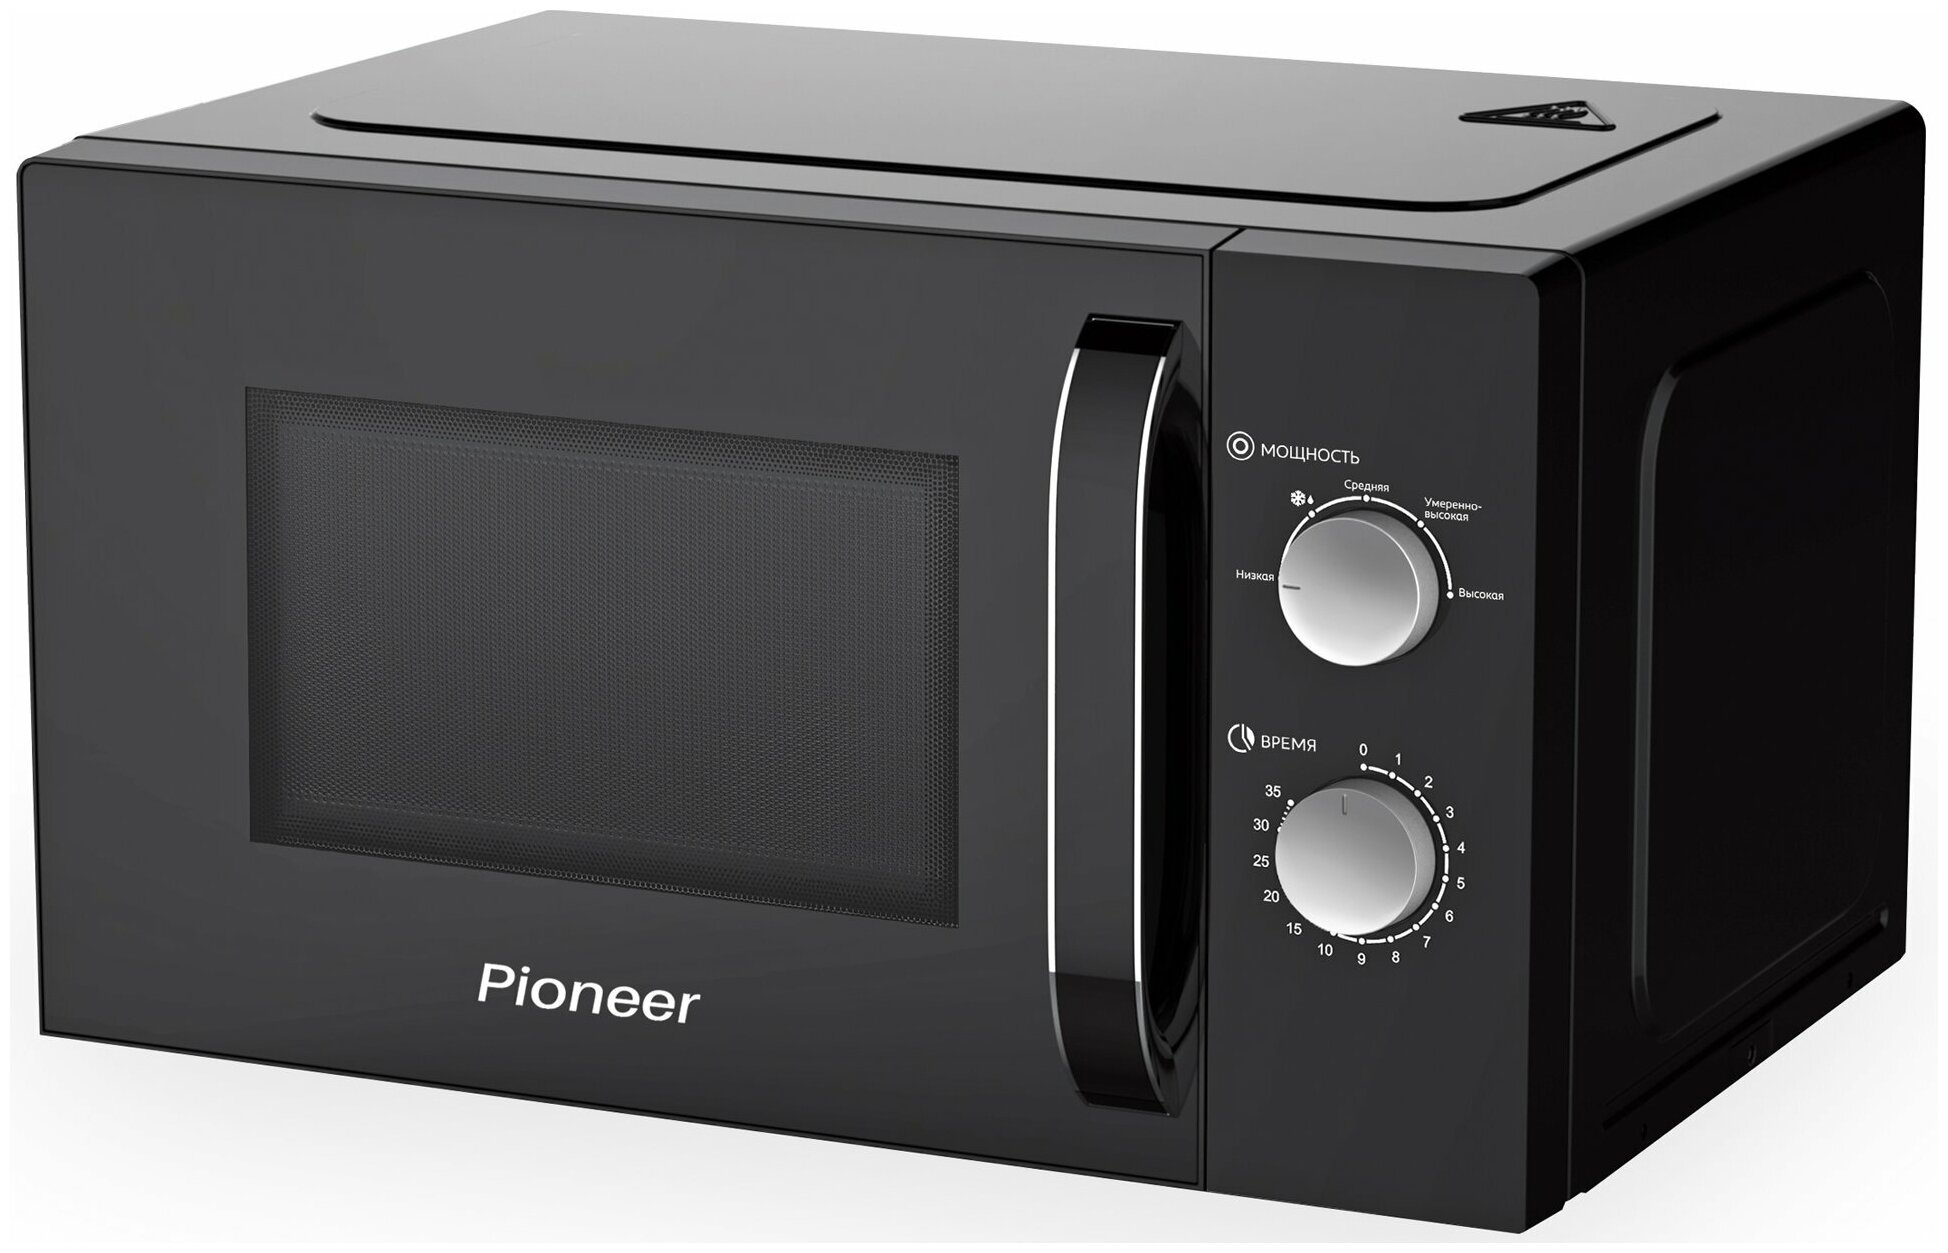 Микроволновая печь Pioneer MW355S с 5 уровнями мощности авторазмораживанием и таймером 800 Вт